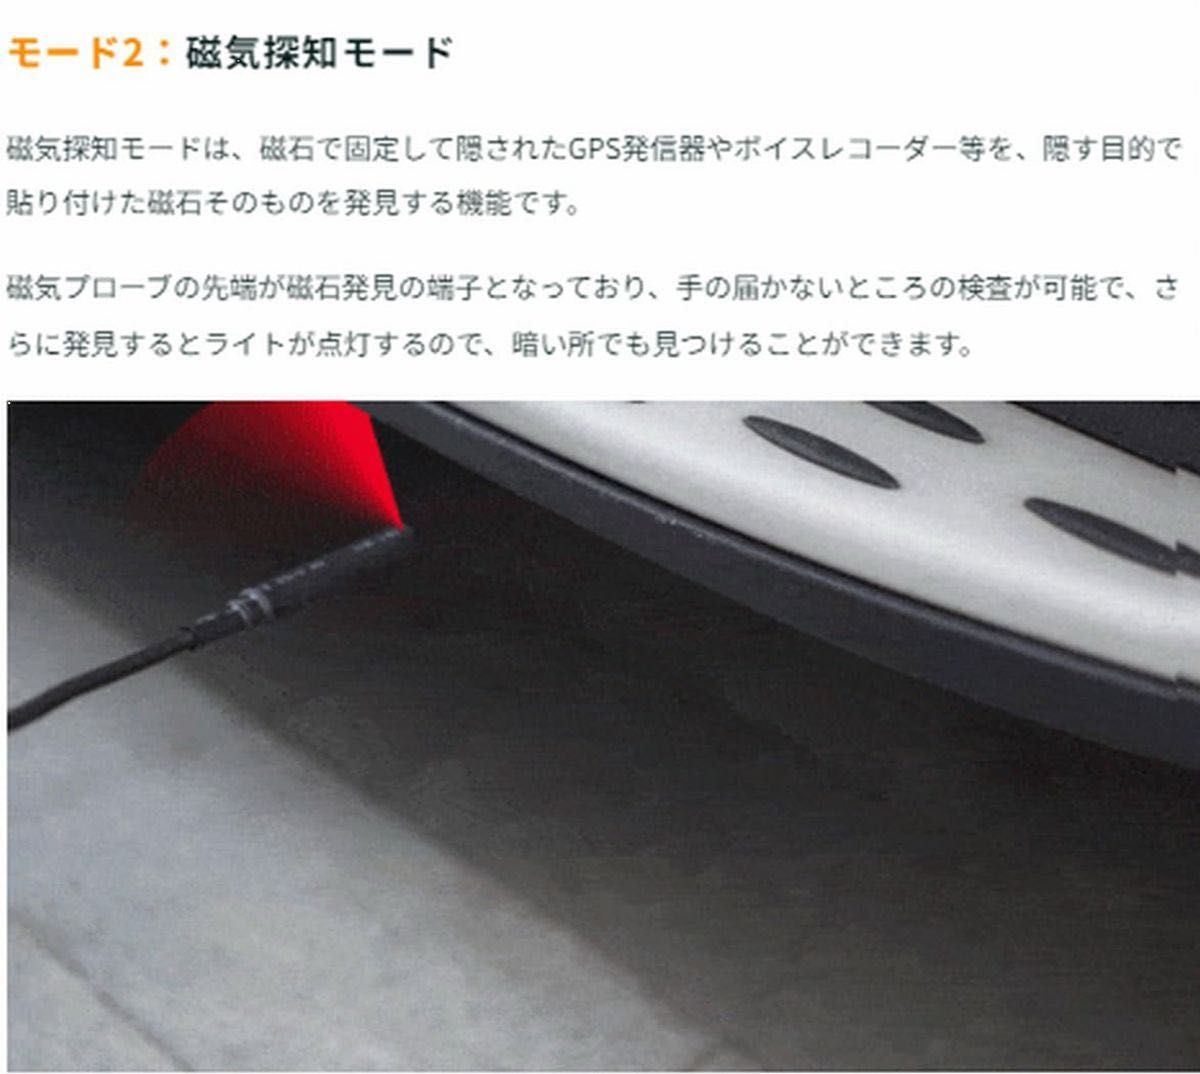 【日本ブランド ZEXEZ】 日本仕様 盗聴器発見器 コンパクト高感度モデル 動画マニュアル 業務用レベル 12000Mhz 